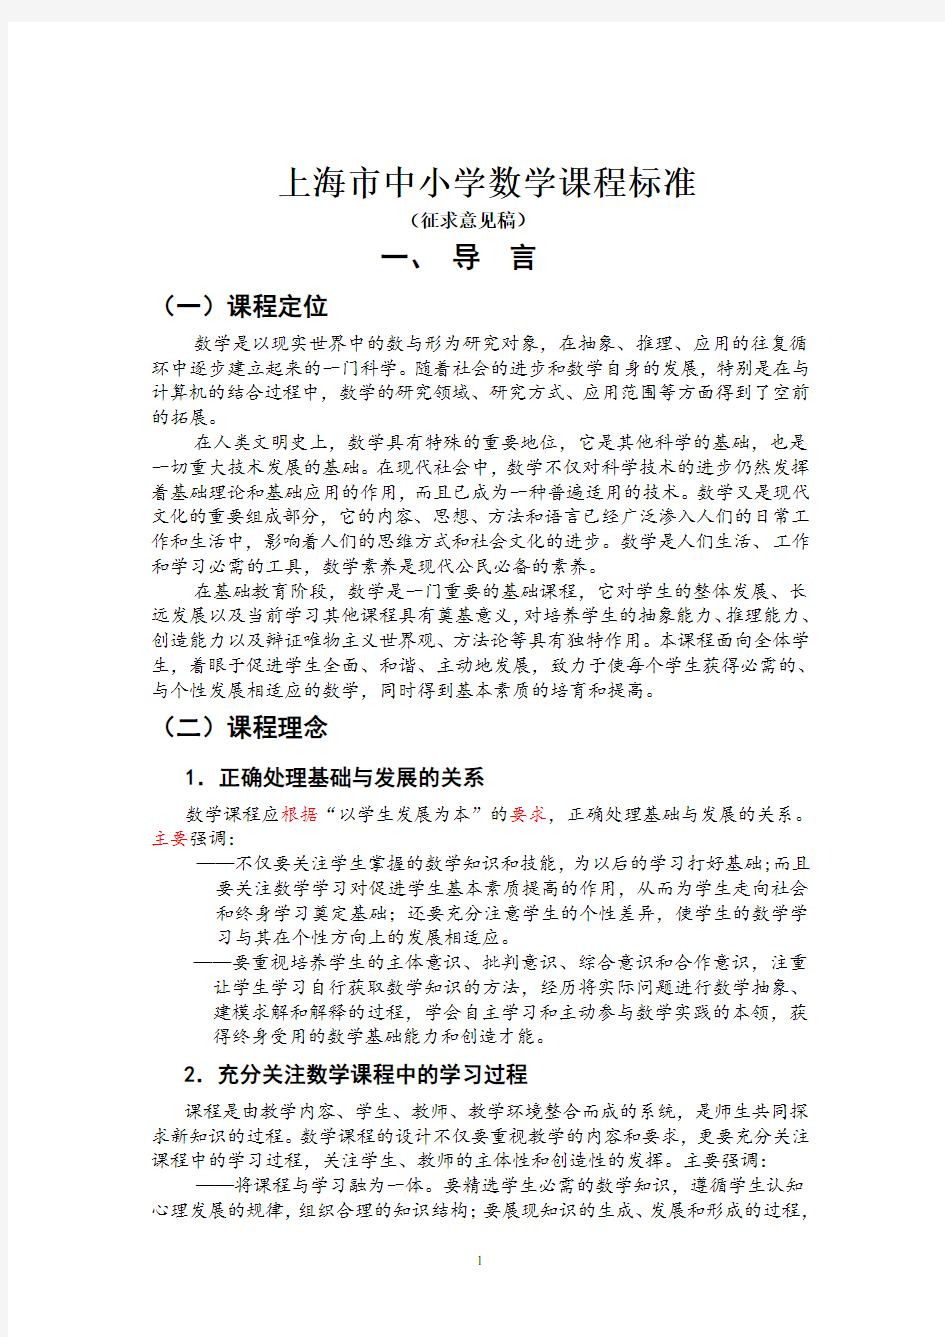 上海市中小学数学课程标准